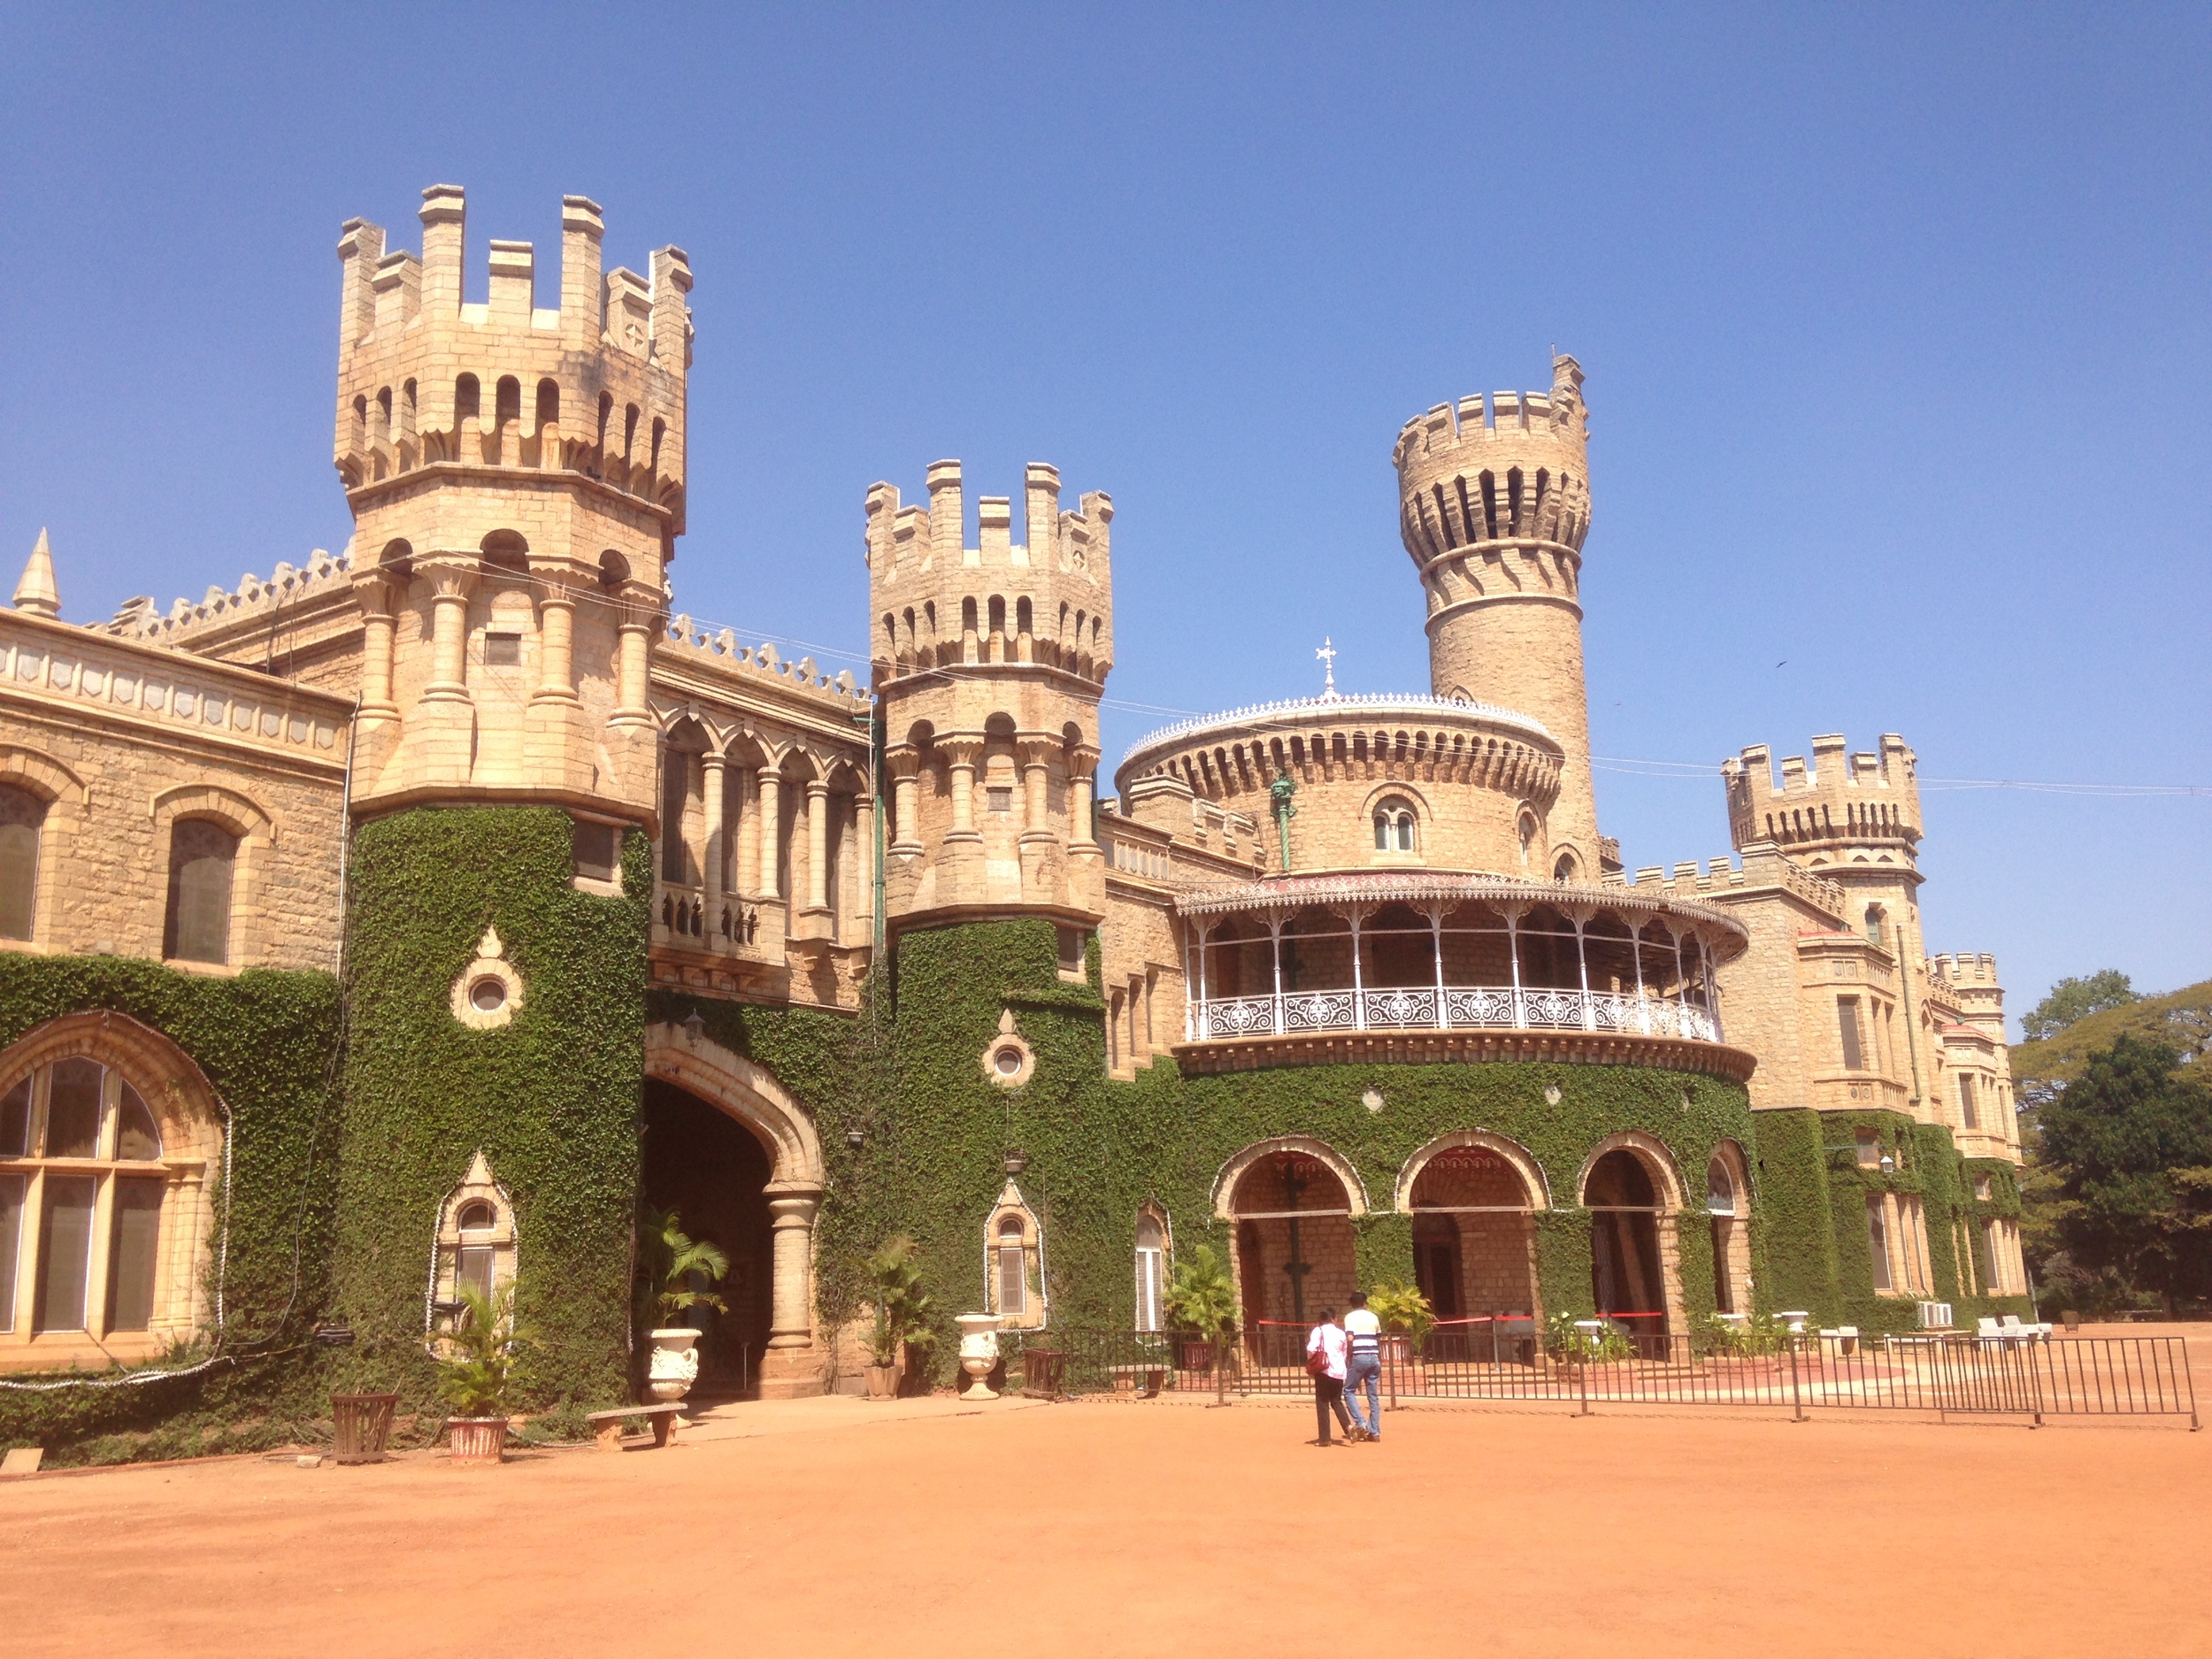  The Bangalore Palace. 